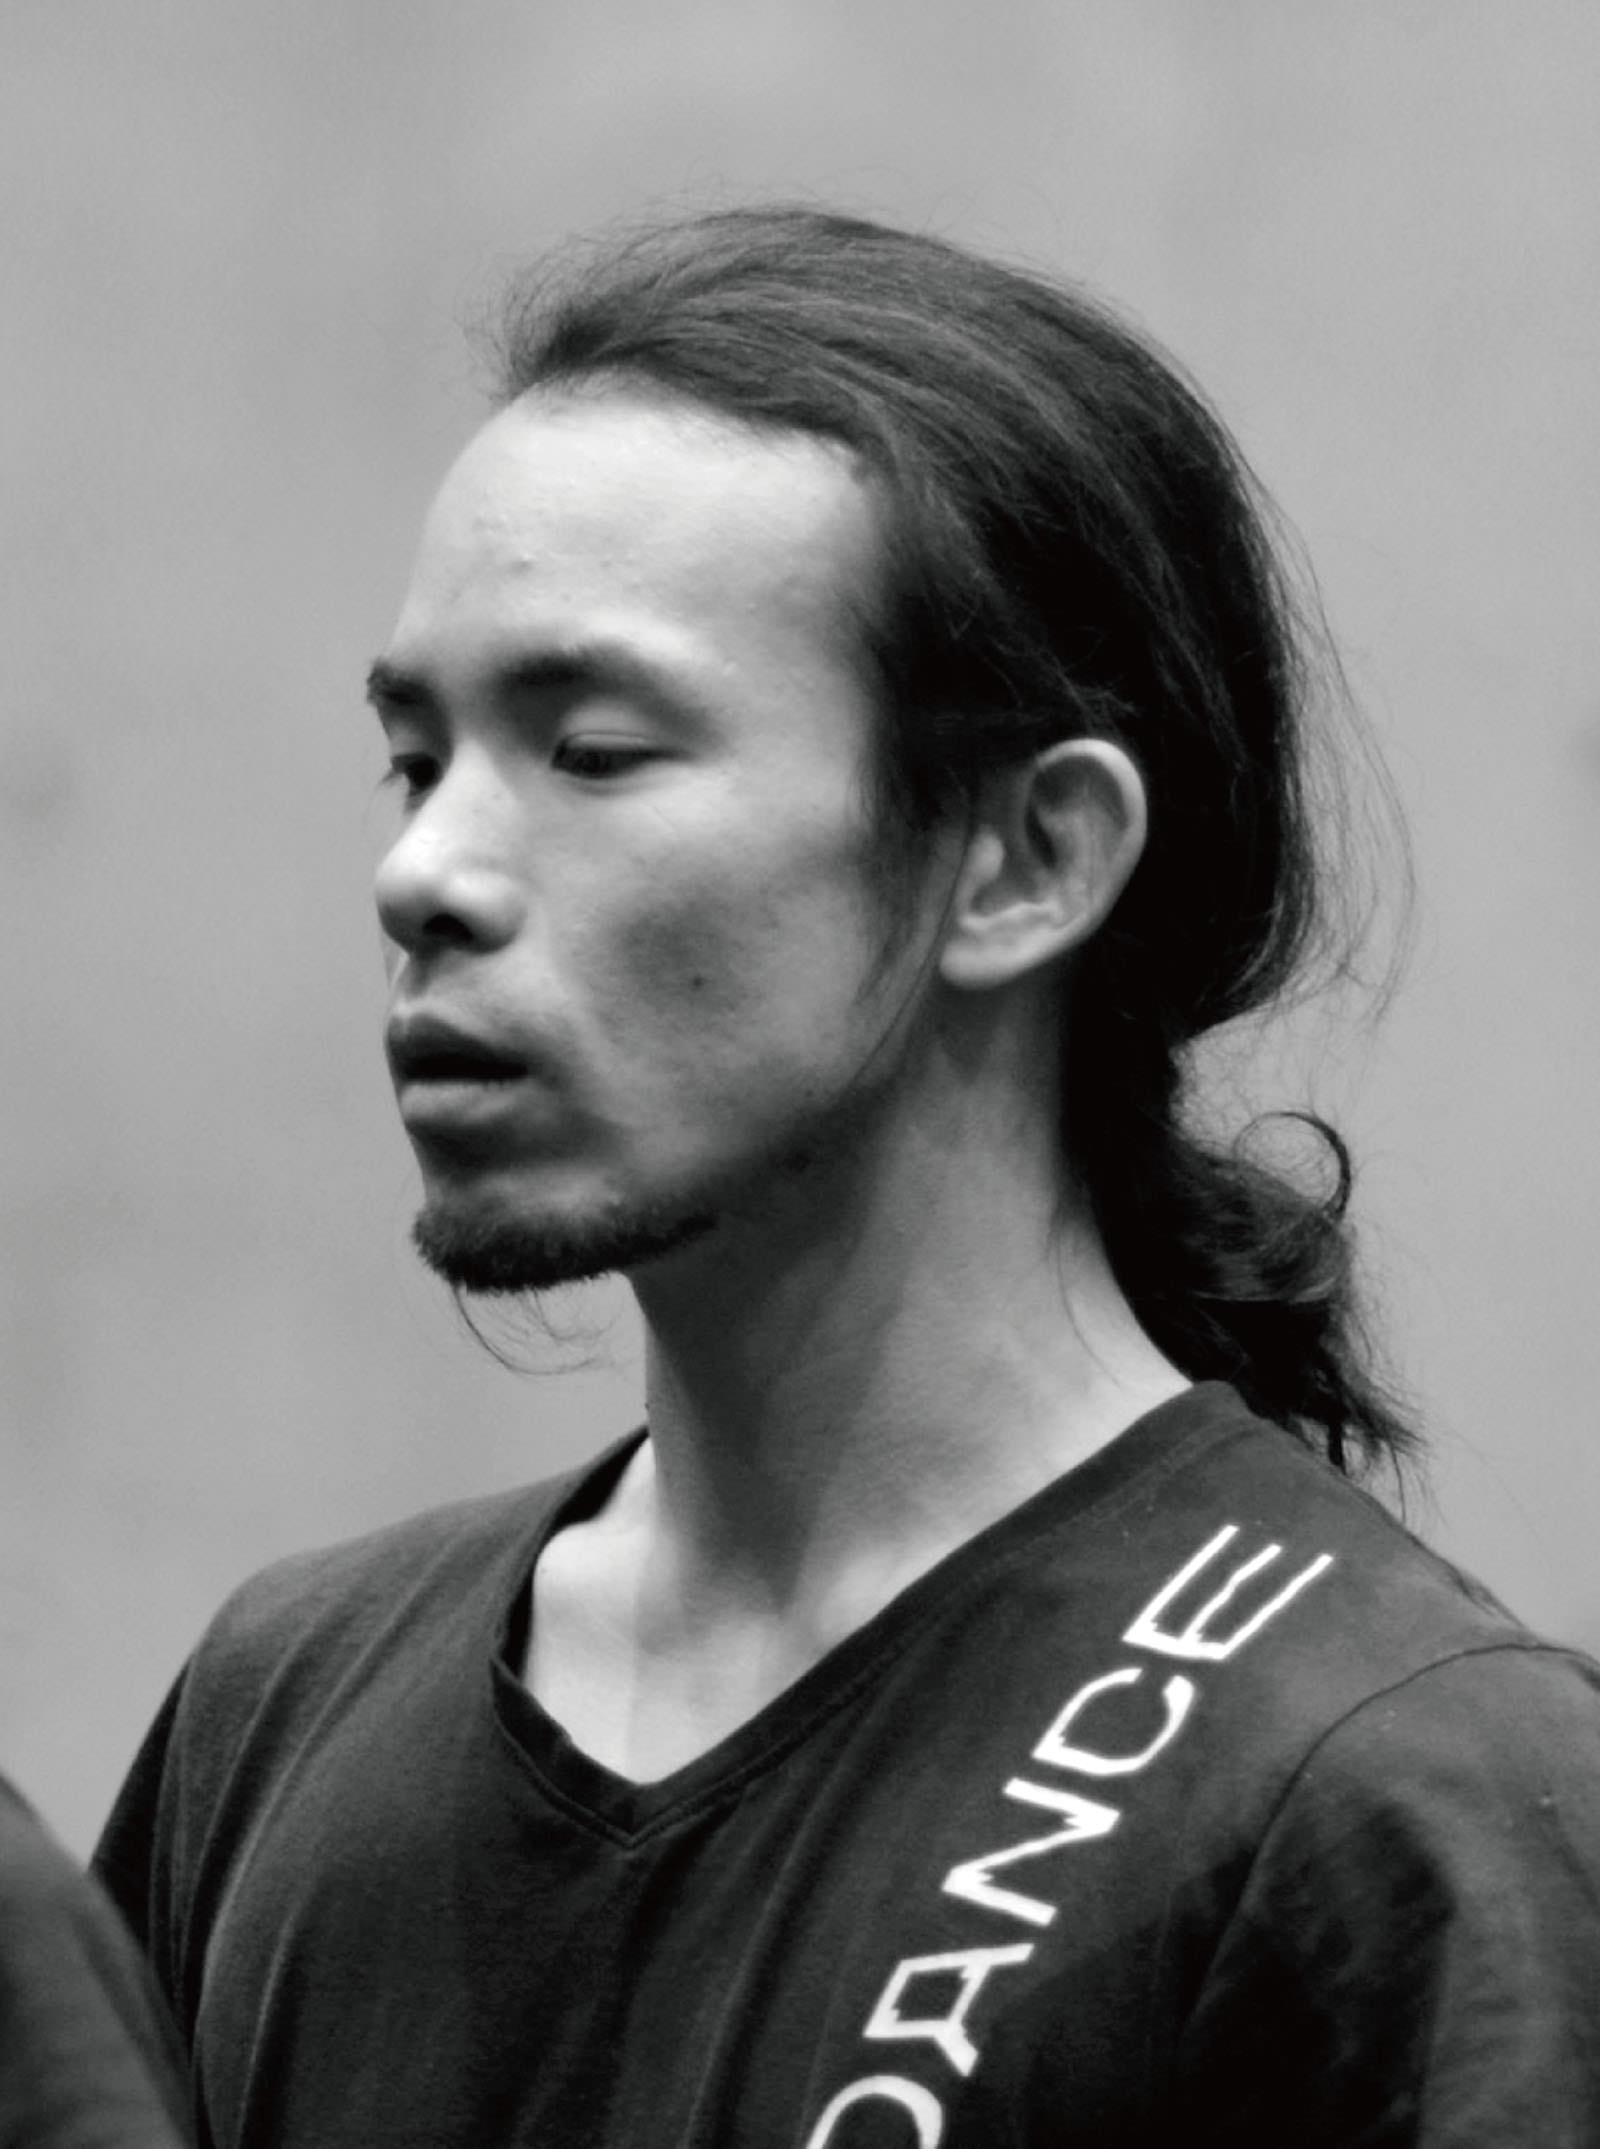 Shintaro Hirahara